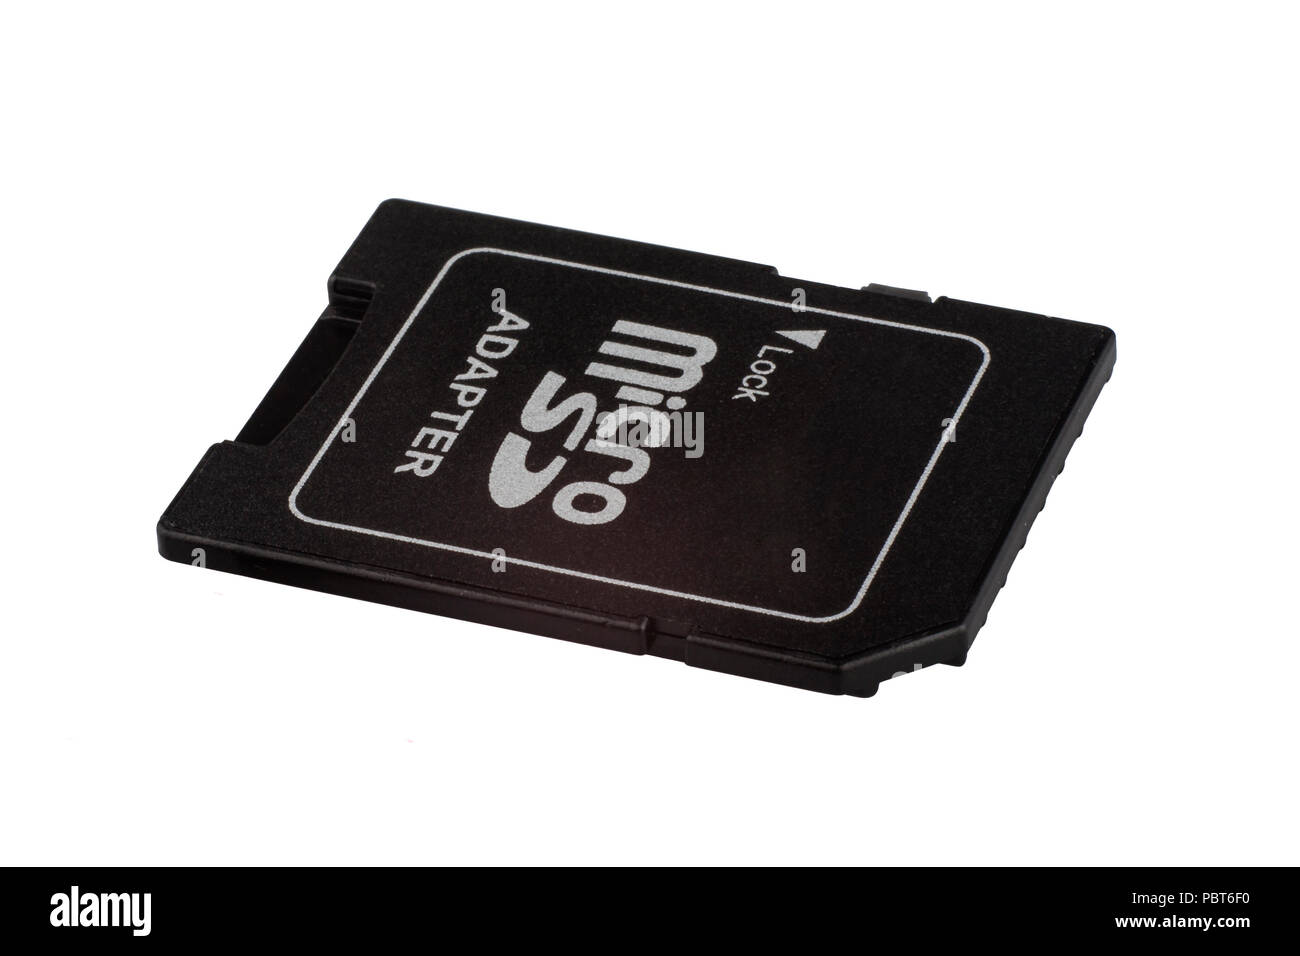 Scheda di memoria micro sd card isolato su sfondo bianco Foto Stock